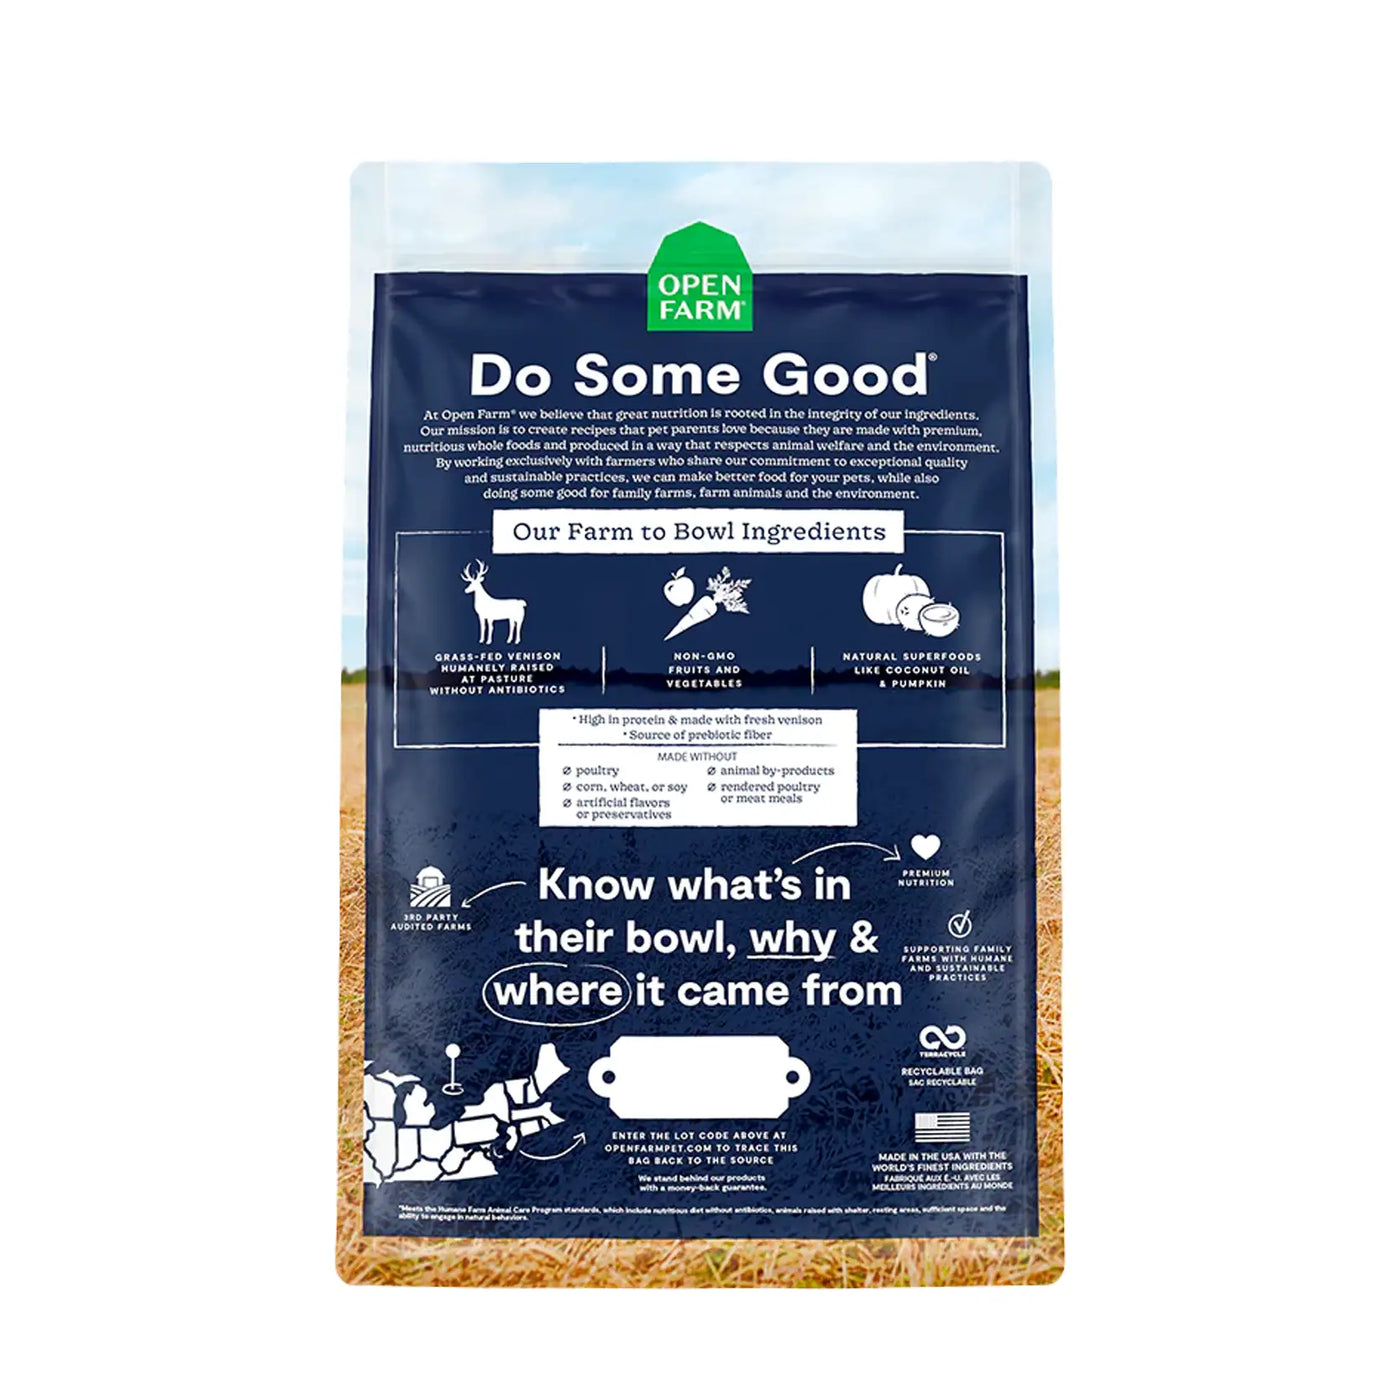 Open Farm Grain Free Dog Food New Zealead Venison Recipe